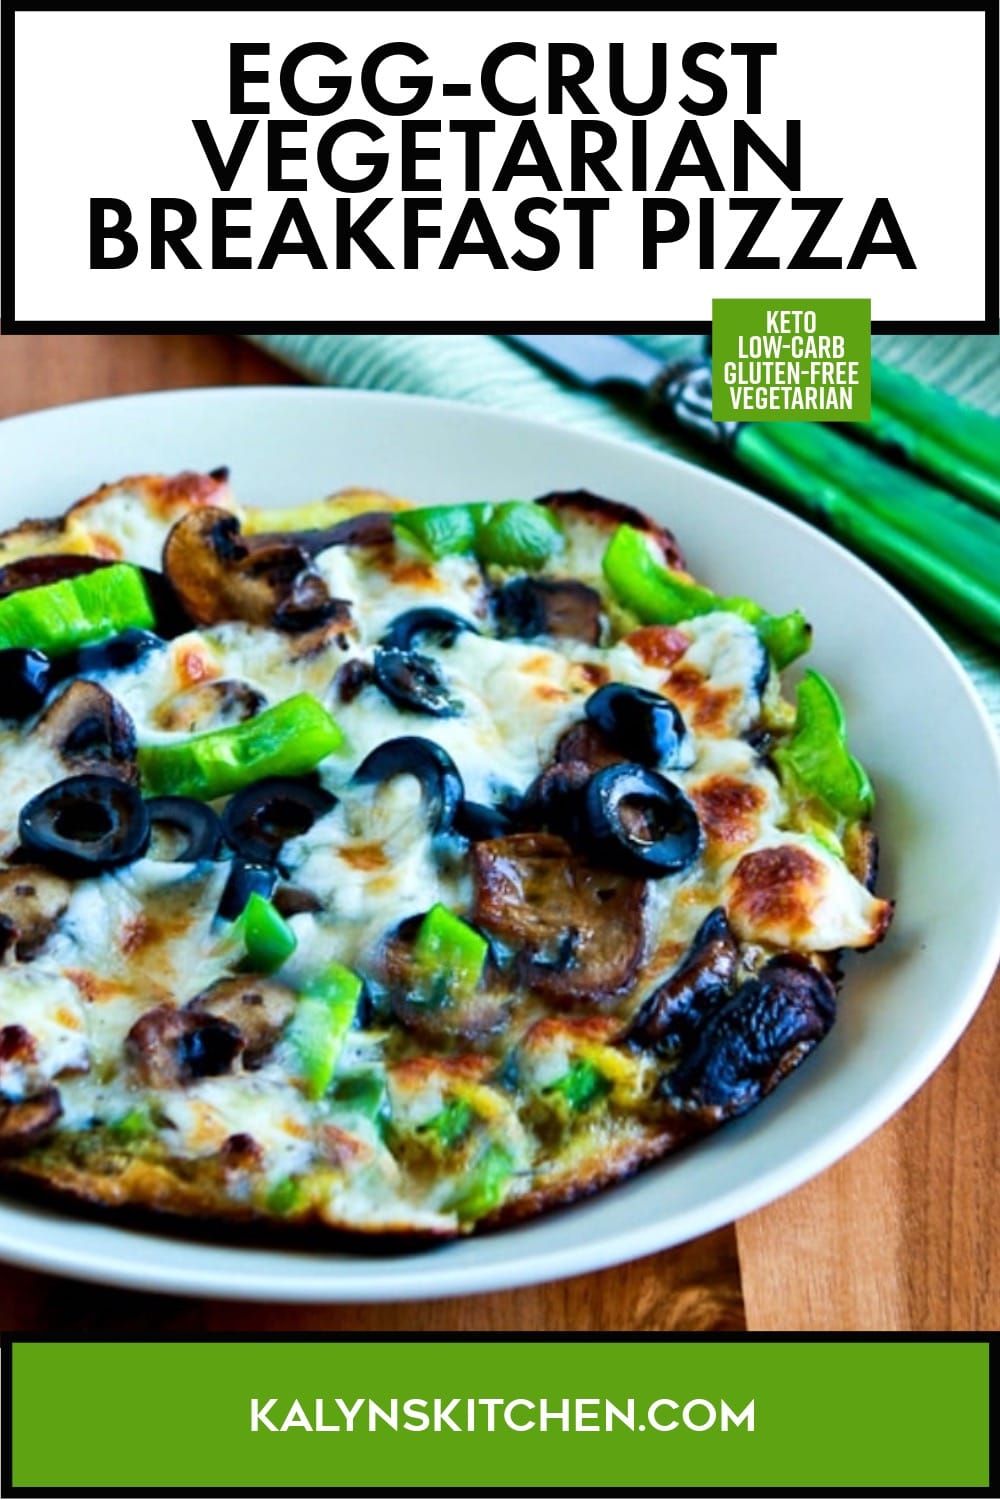 Pinterest image of Egg-Crust Vegetarian Breakfast Pizza